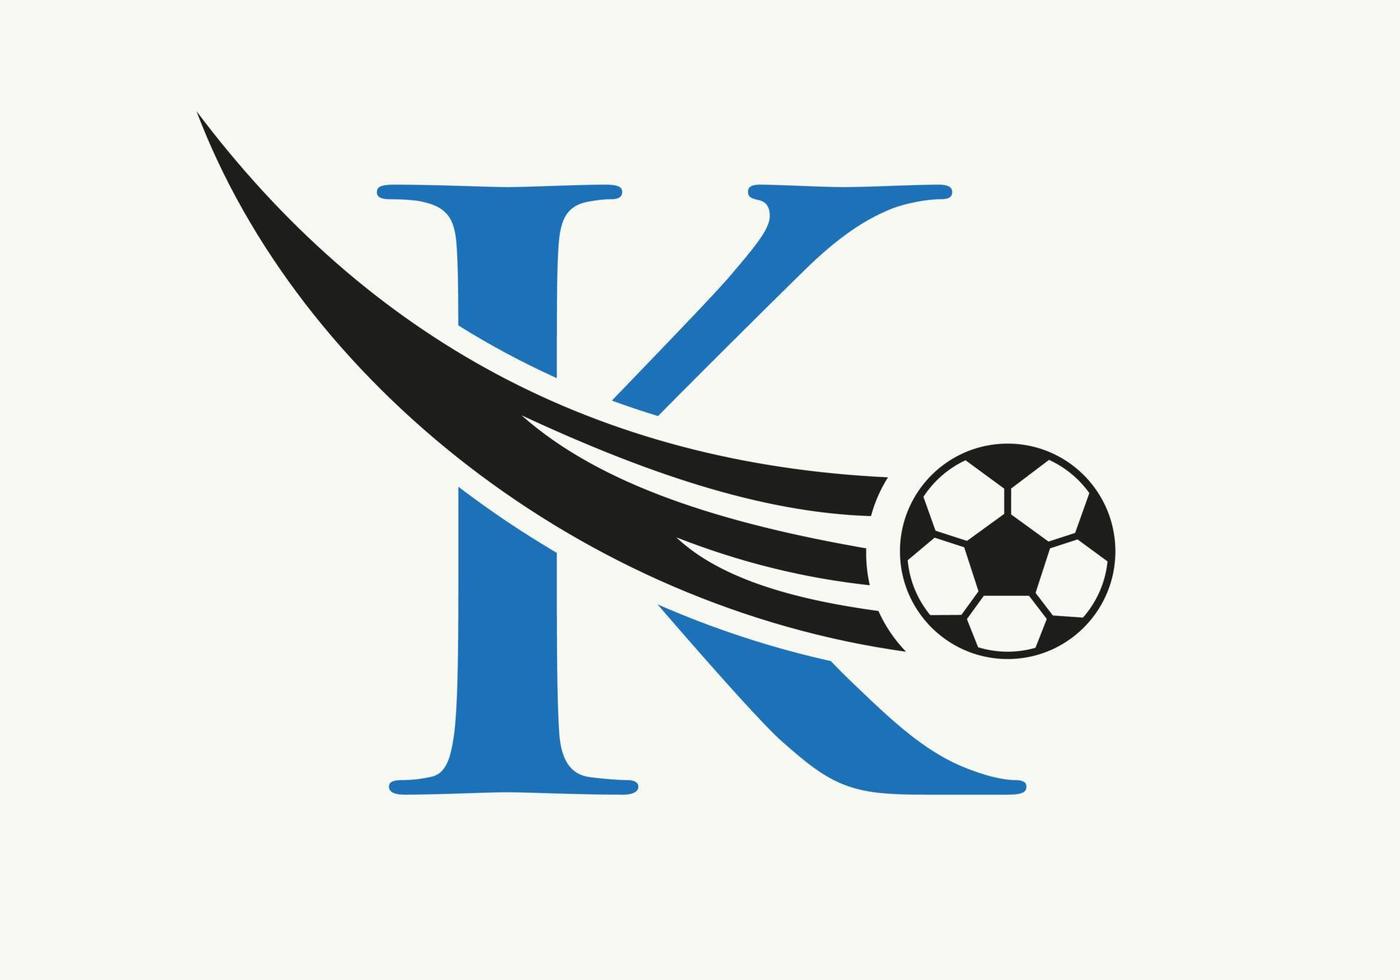 logotipo de futebol de futebol de letra k. conceito de símbolo do clube de futebol do ícone do time de futebol vetor